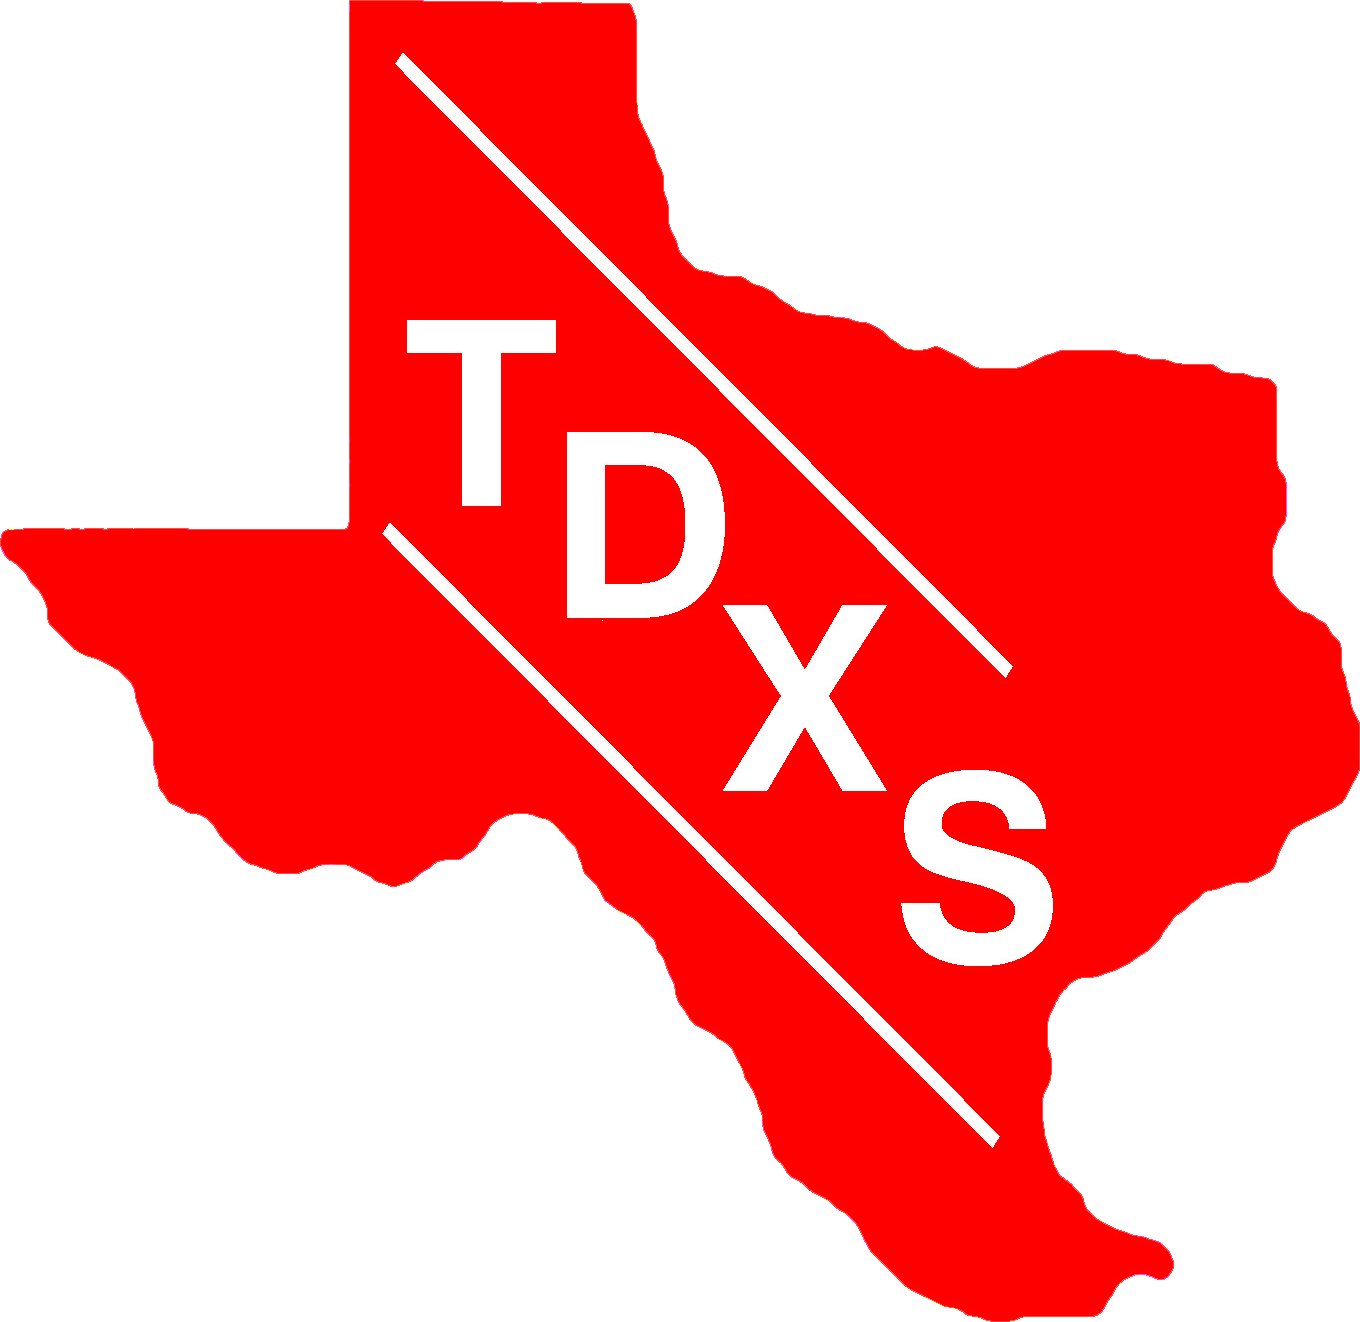 tdxs logo